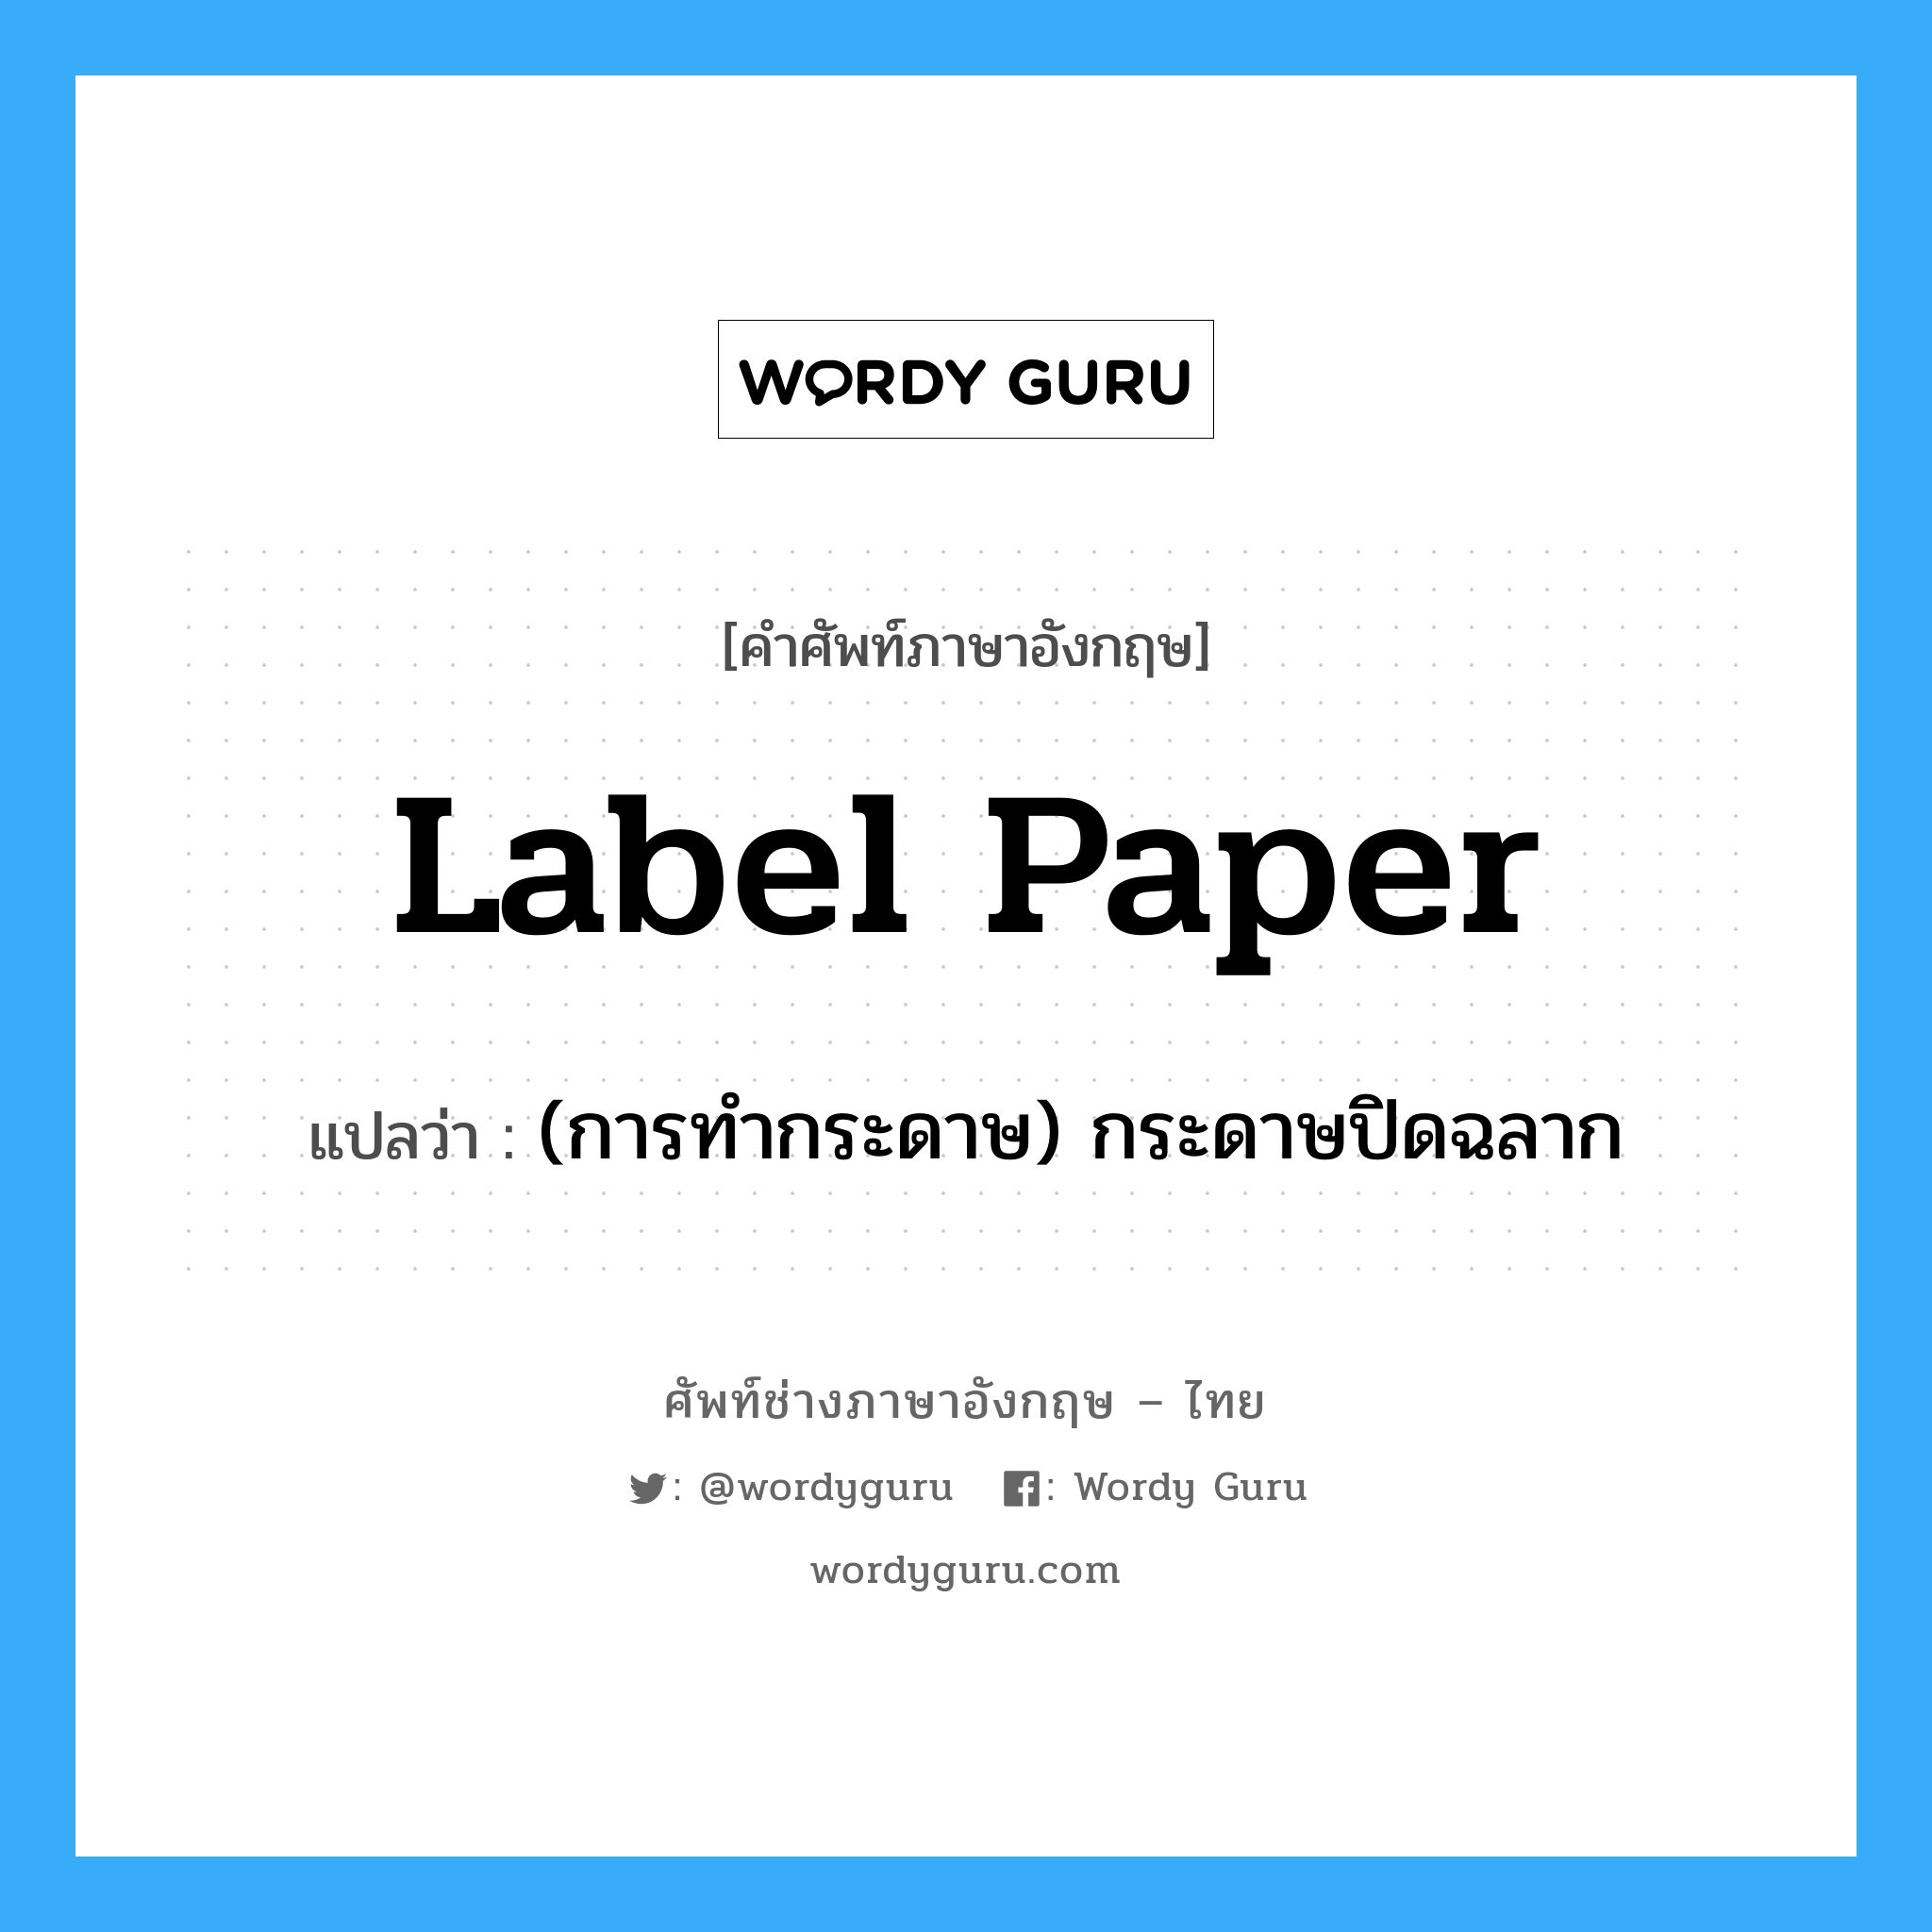 (การทำกระดาษ) กระดาษปิดฉลาก ภาษาอังกฤษ?, คำศัพท์ช่างภาษาอังกฤษ - ไทย (การทำกระดาษ) กระดาษปิดฉลาก คำศัพท์ภาษาอังกฤษ (การทำกระดาษ) กระดาษปิดฉลาก แปลว่า label paper